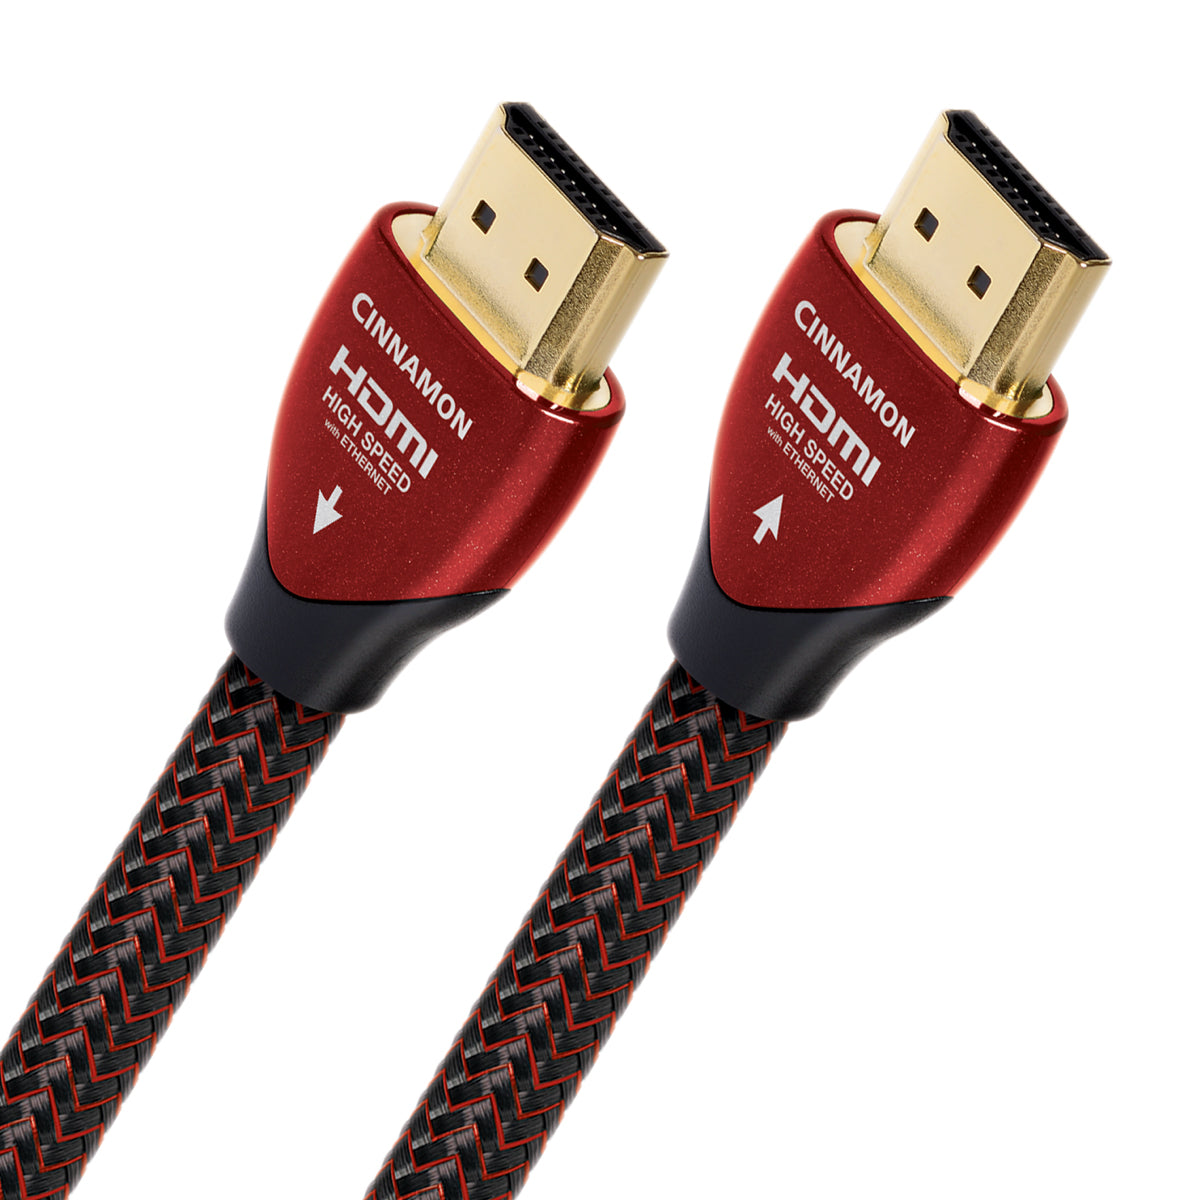 AudioQuest Cinnamon - 4K HDMI Cable - AVStore